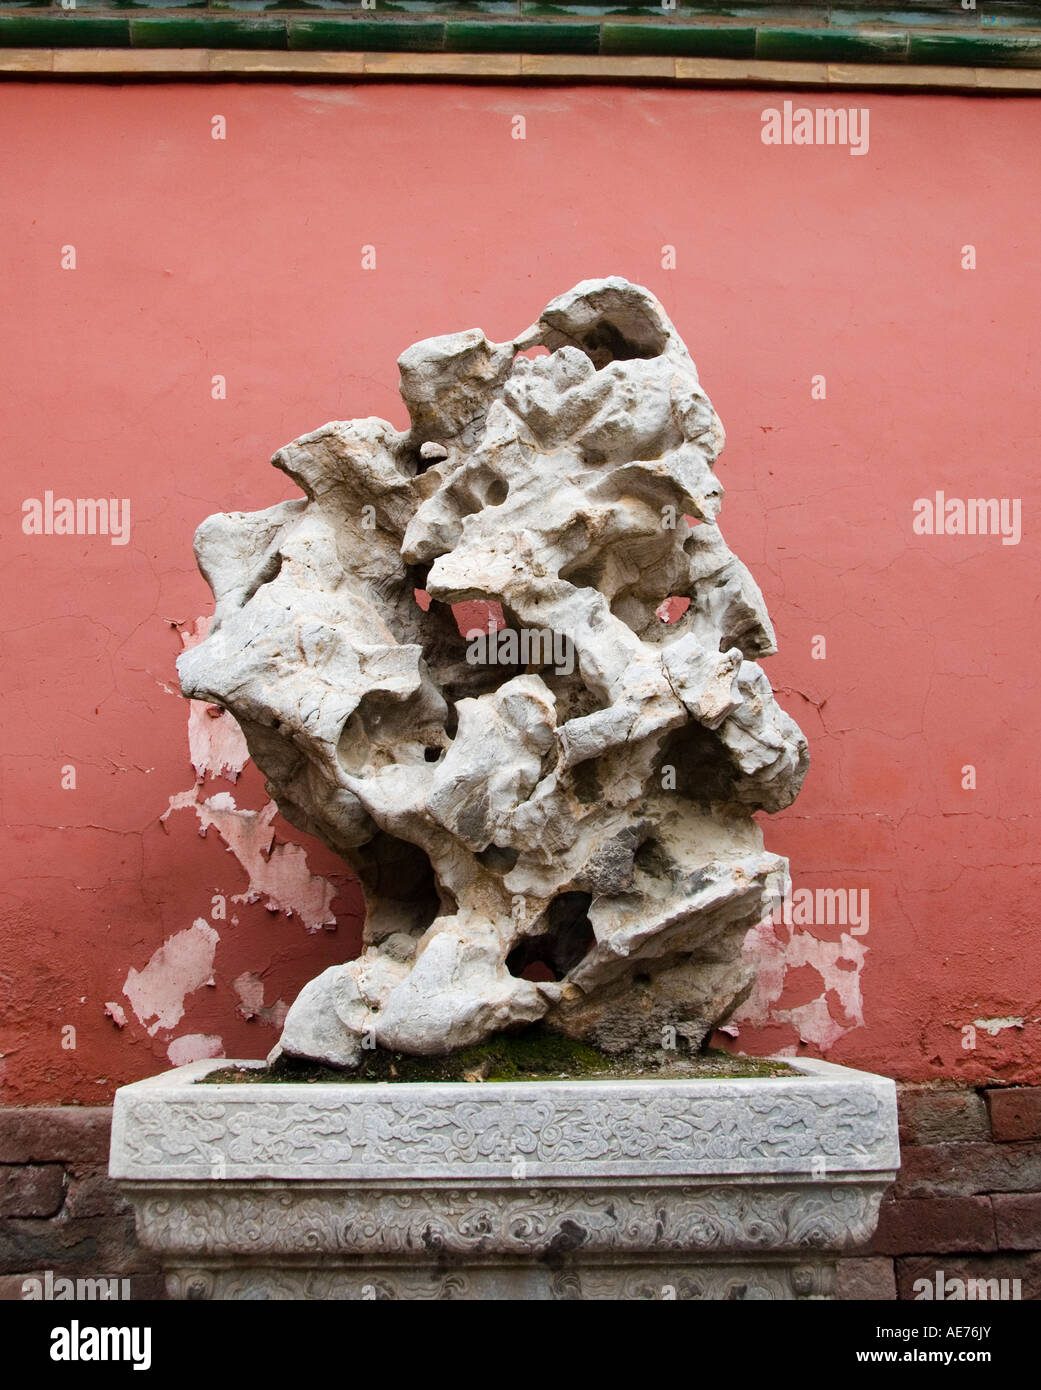 Dettaglio di un tradizionale grande pietra naturale utilizzata come la scultura nella Città Proibita di Pechino 2007 Foto Stock